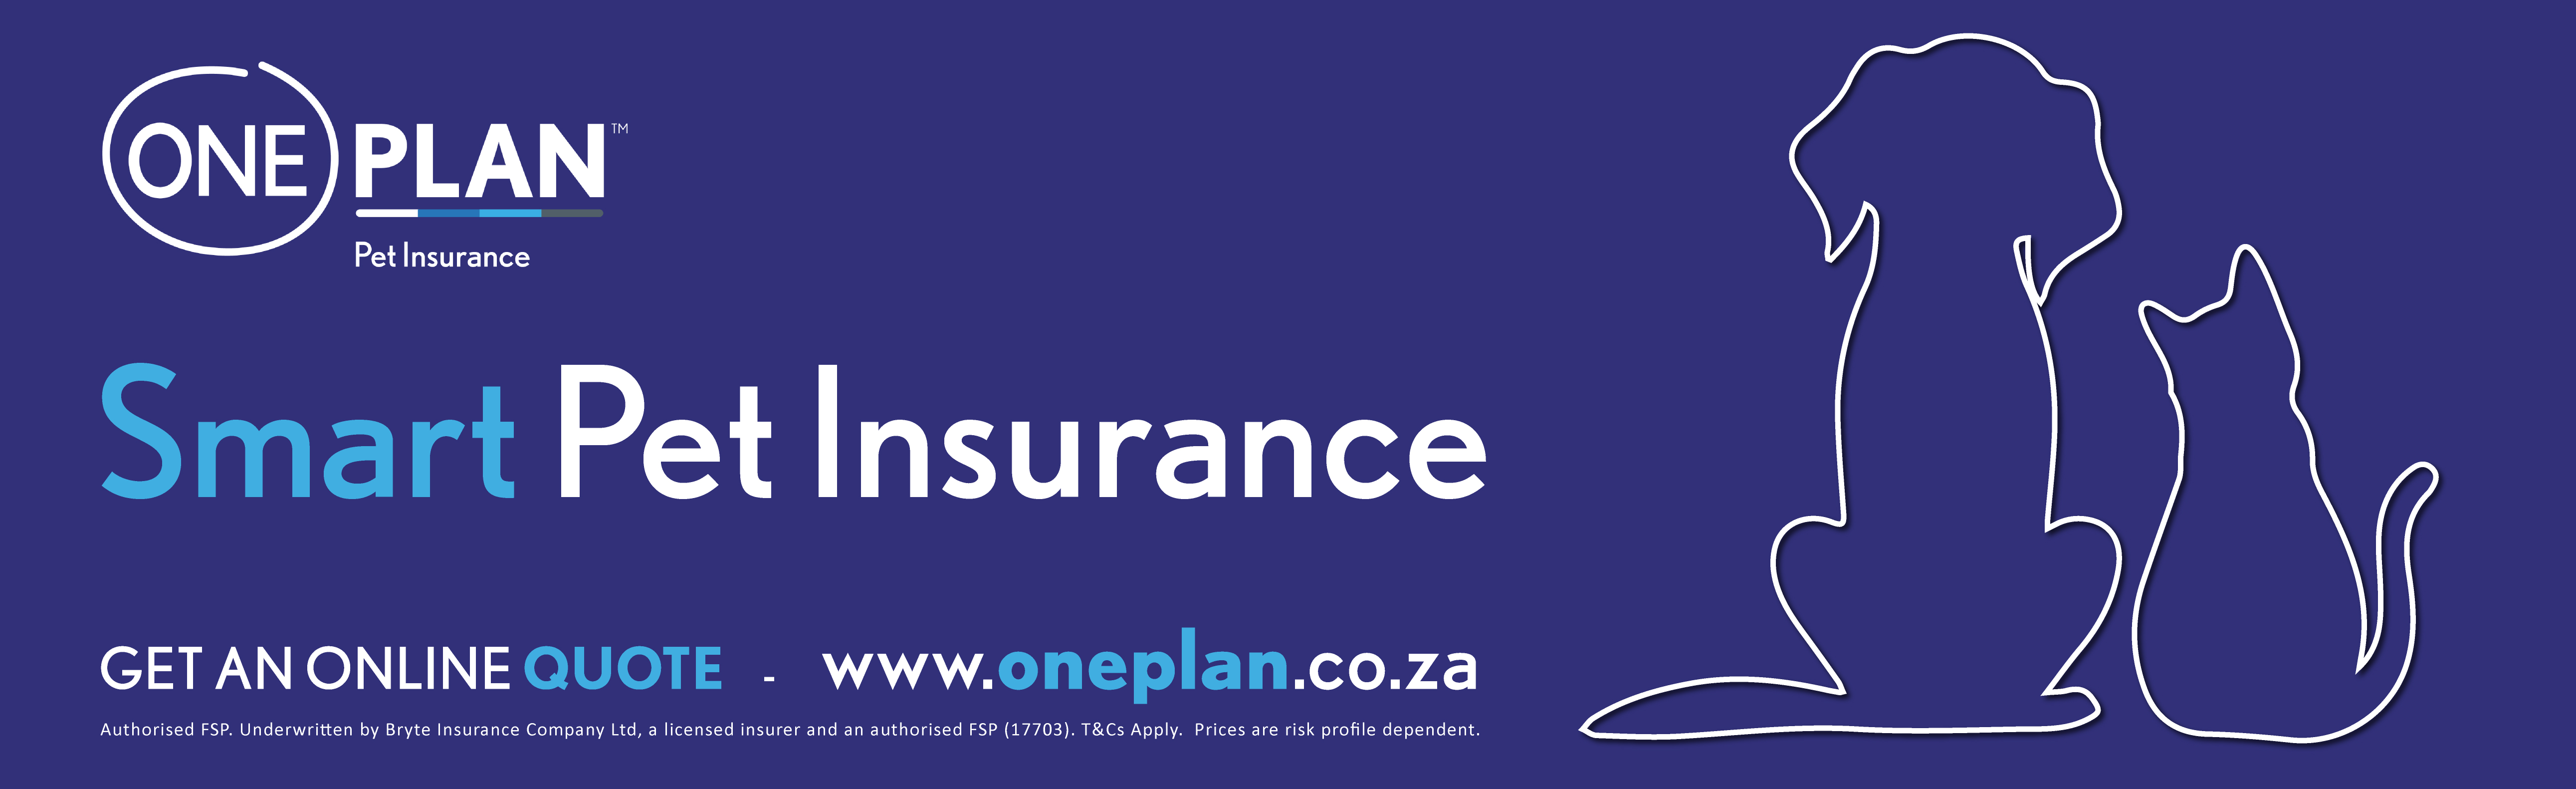 oneplan pet insurance